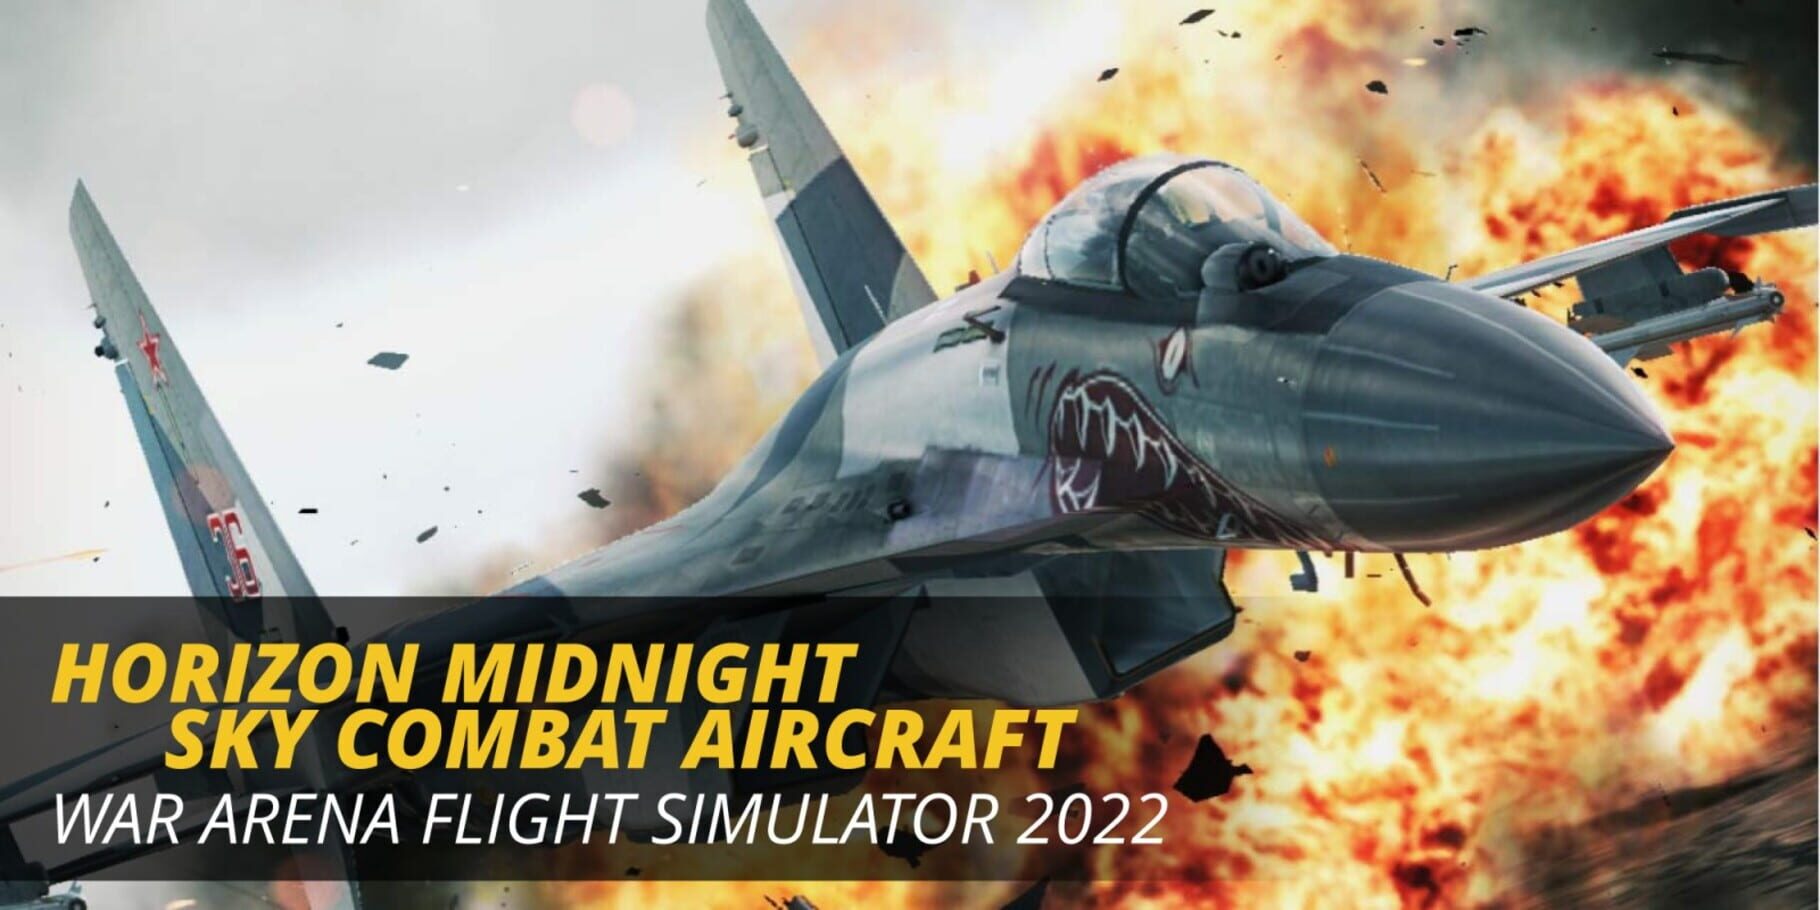 Horizon Midnight Sky Combat Aircraft: War Arena Flight Simulator 2022 artwork